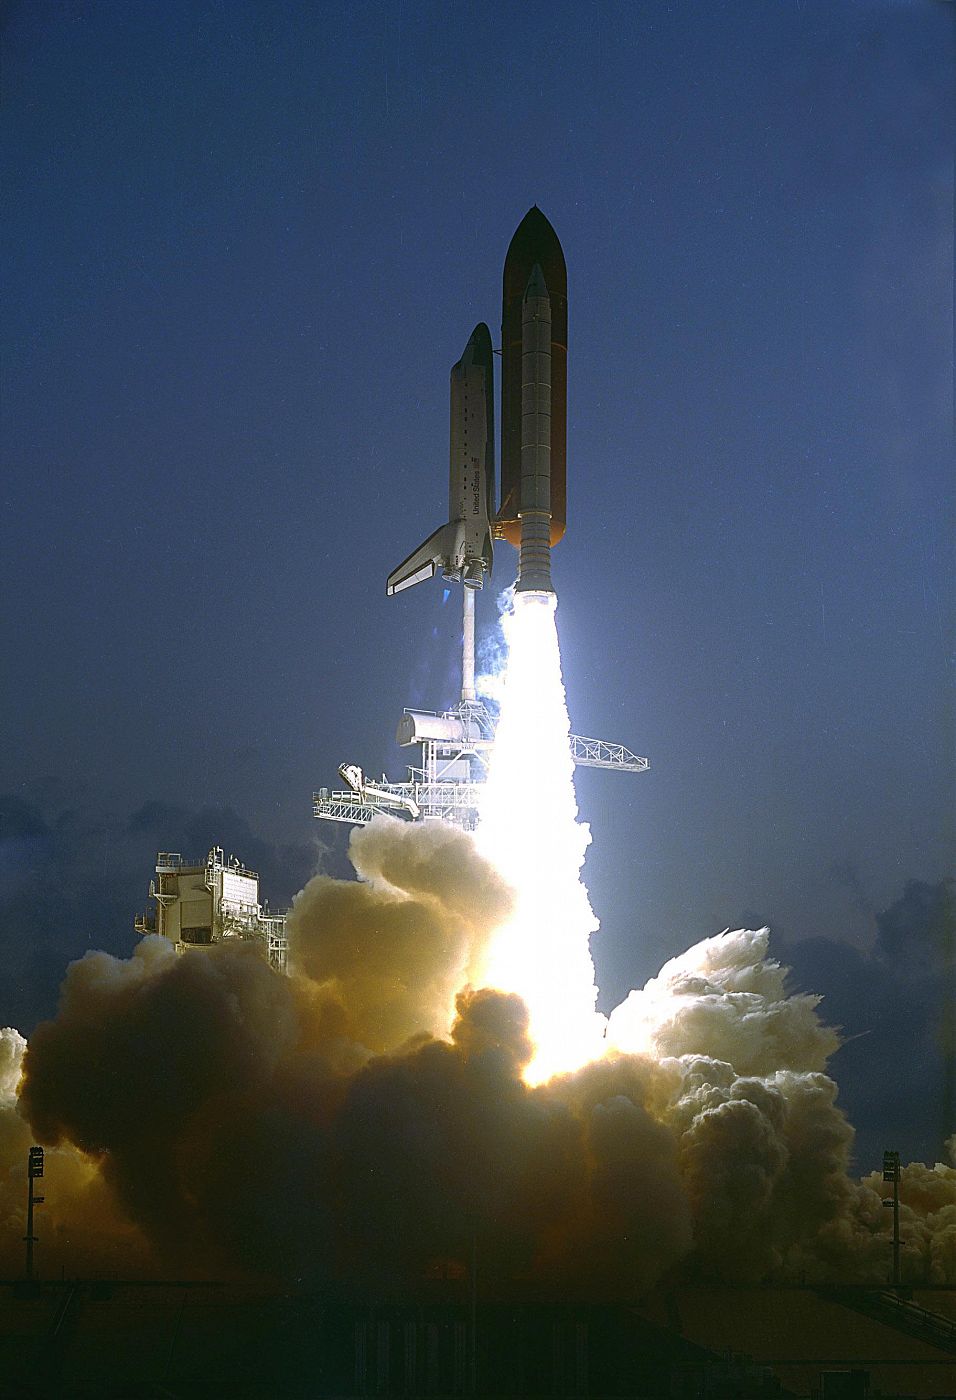 El transbordador espacial Endeavour despegando en su primera misión el 7 de mayo de 1992